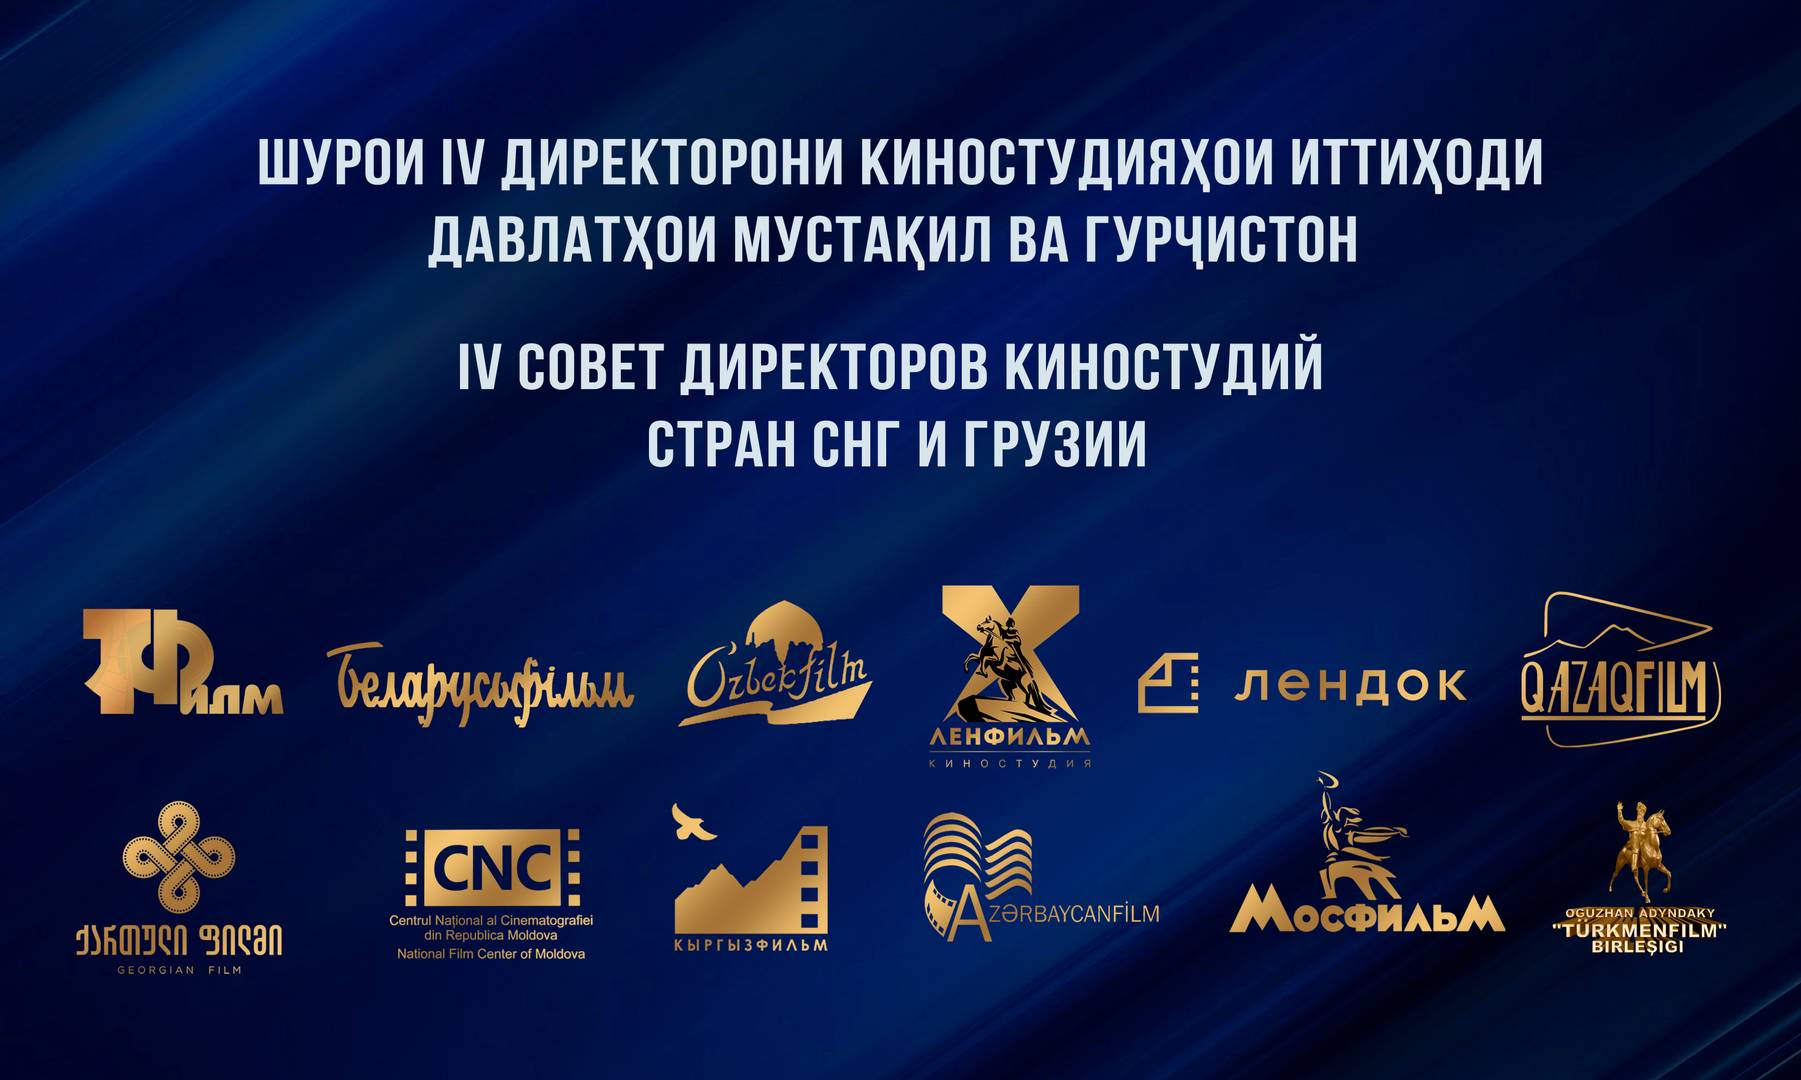 Банер «IV Совет директоров киностудий стран СНГ и Грузии»